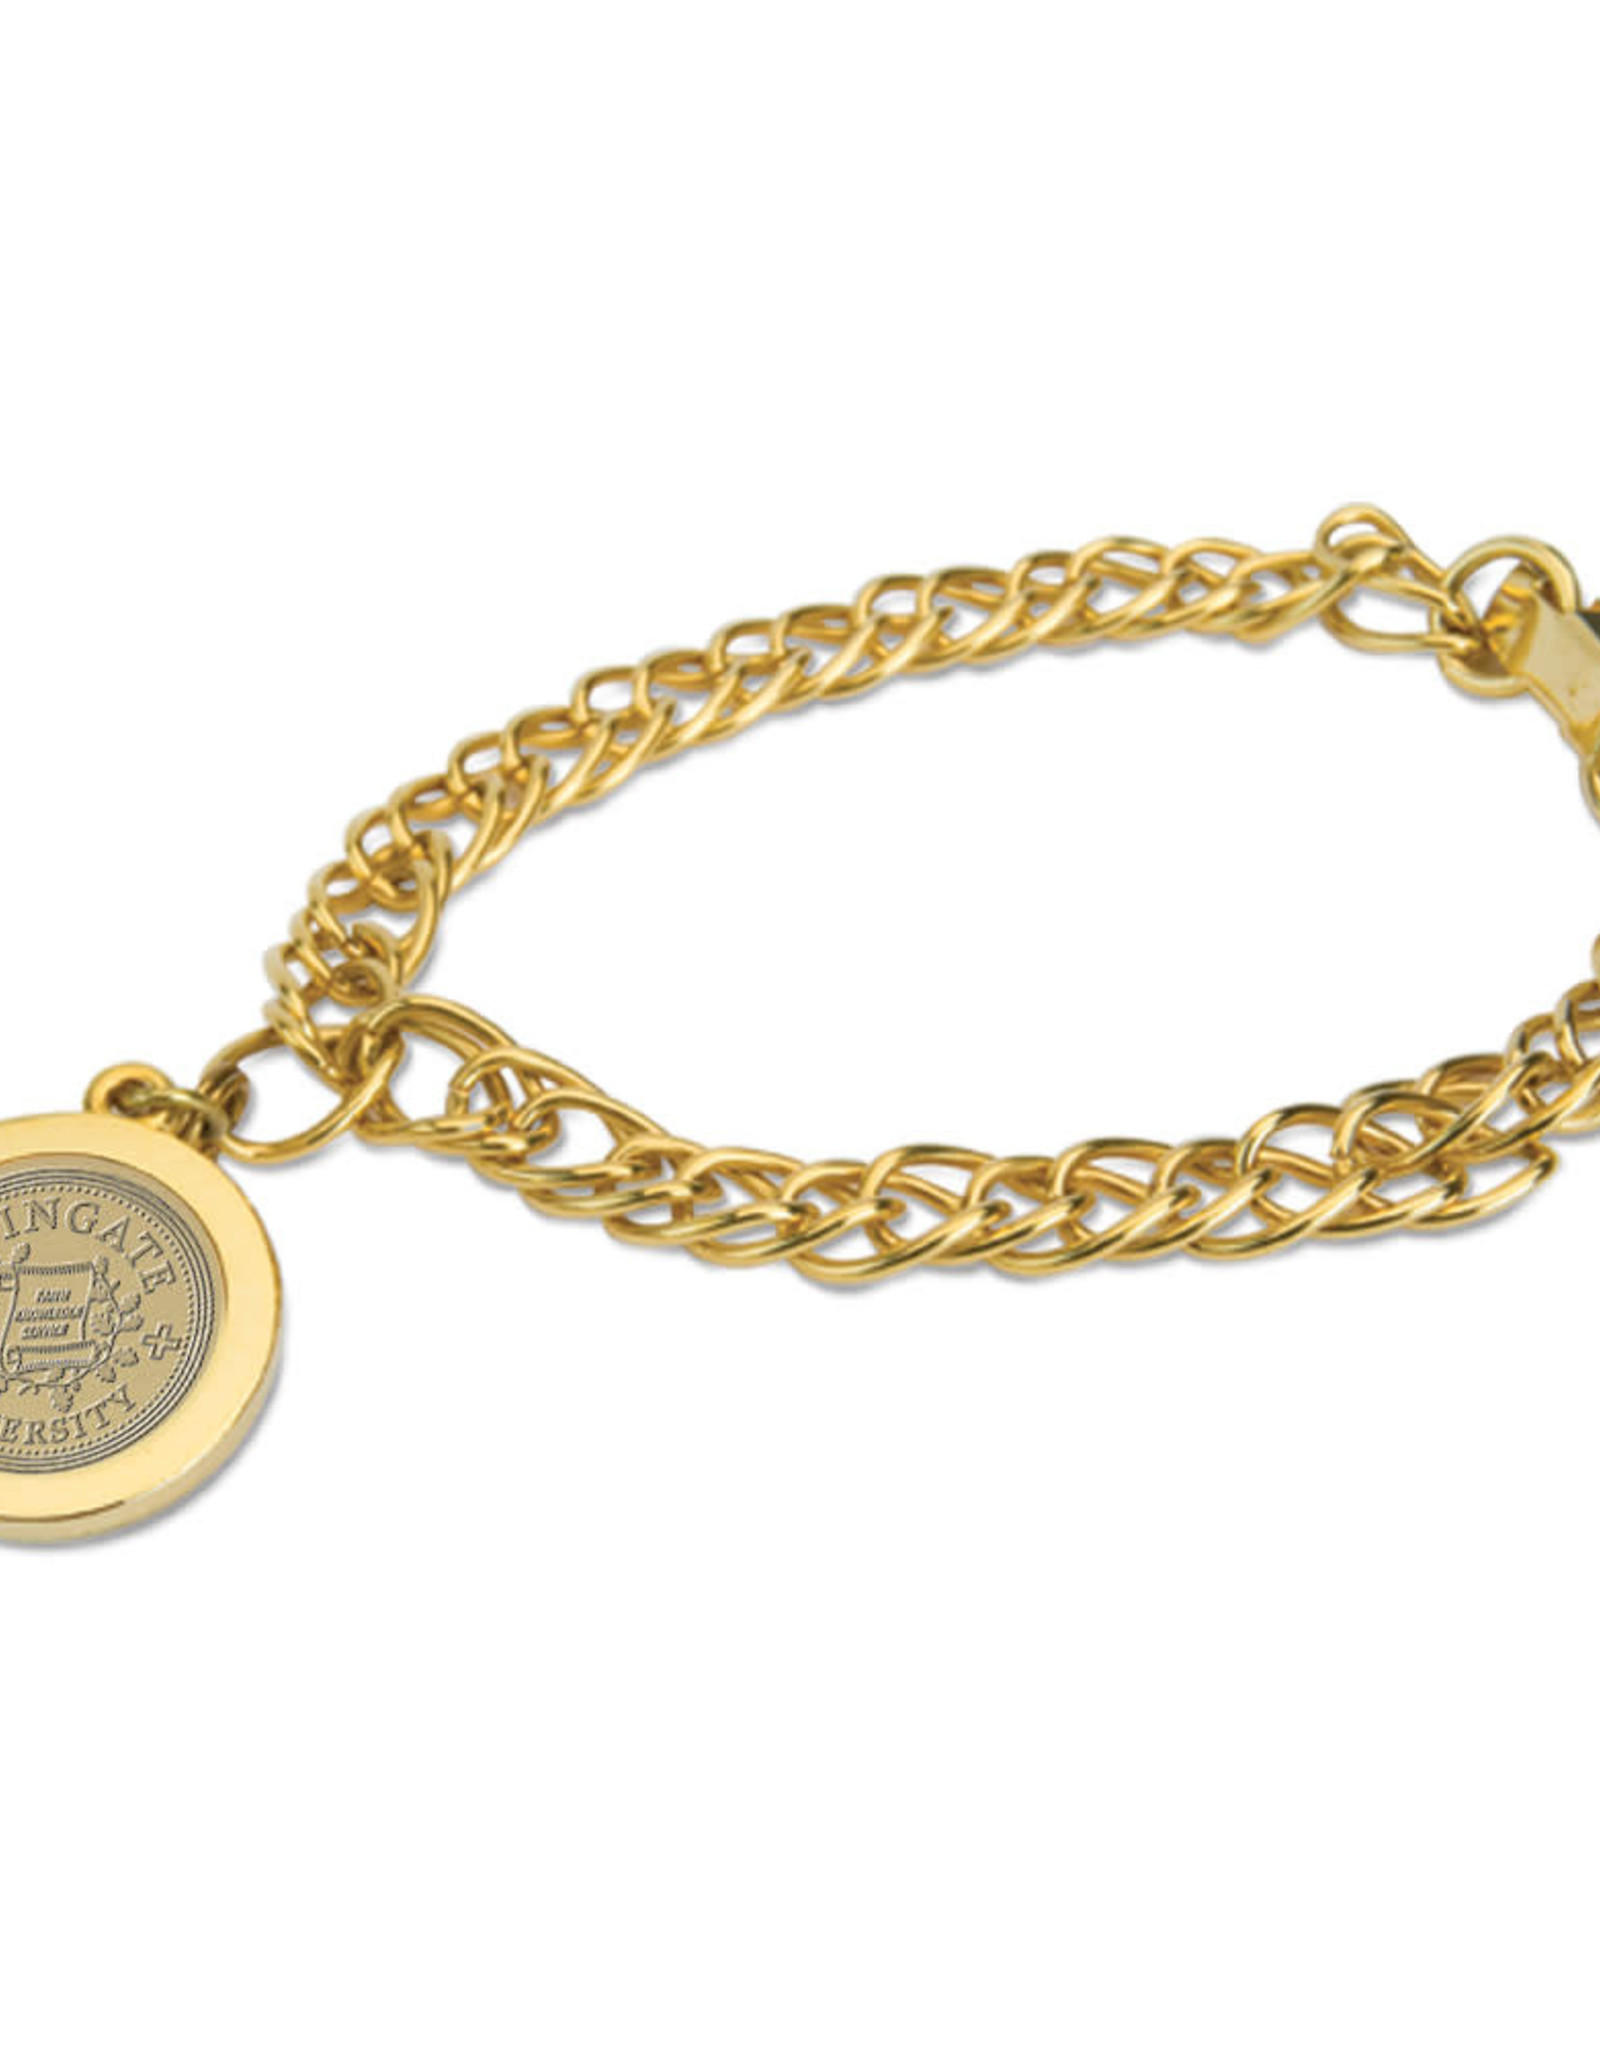 Gold Etched Seal Charm Bracelet